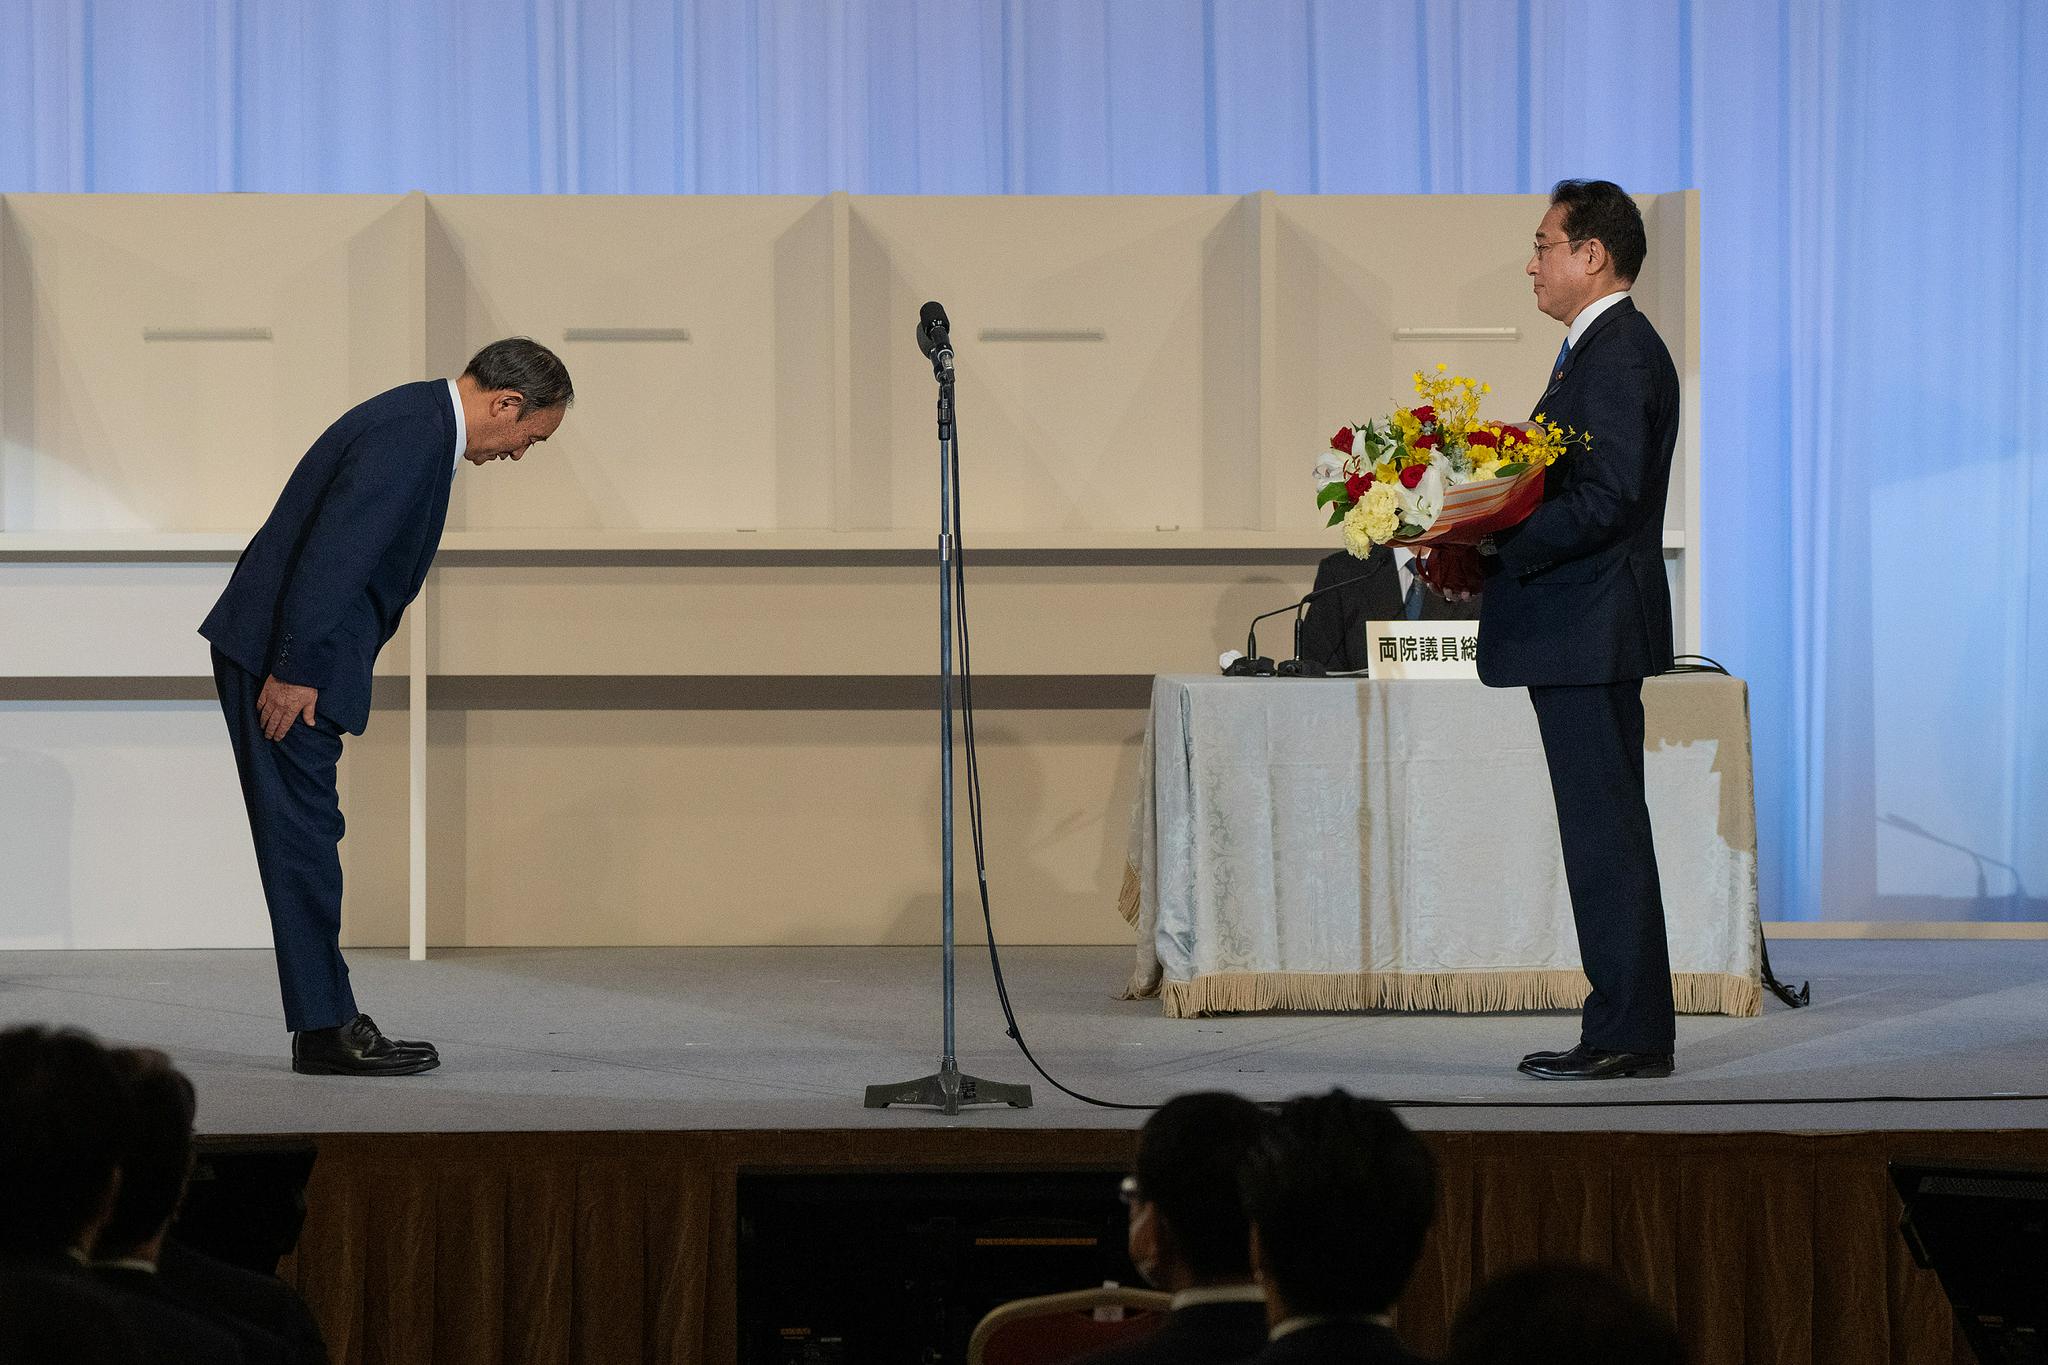 即将卸任的首相菅义伟向岸田鞠躬表示祝贺 图自视觉中国